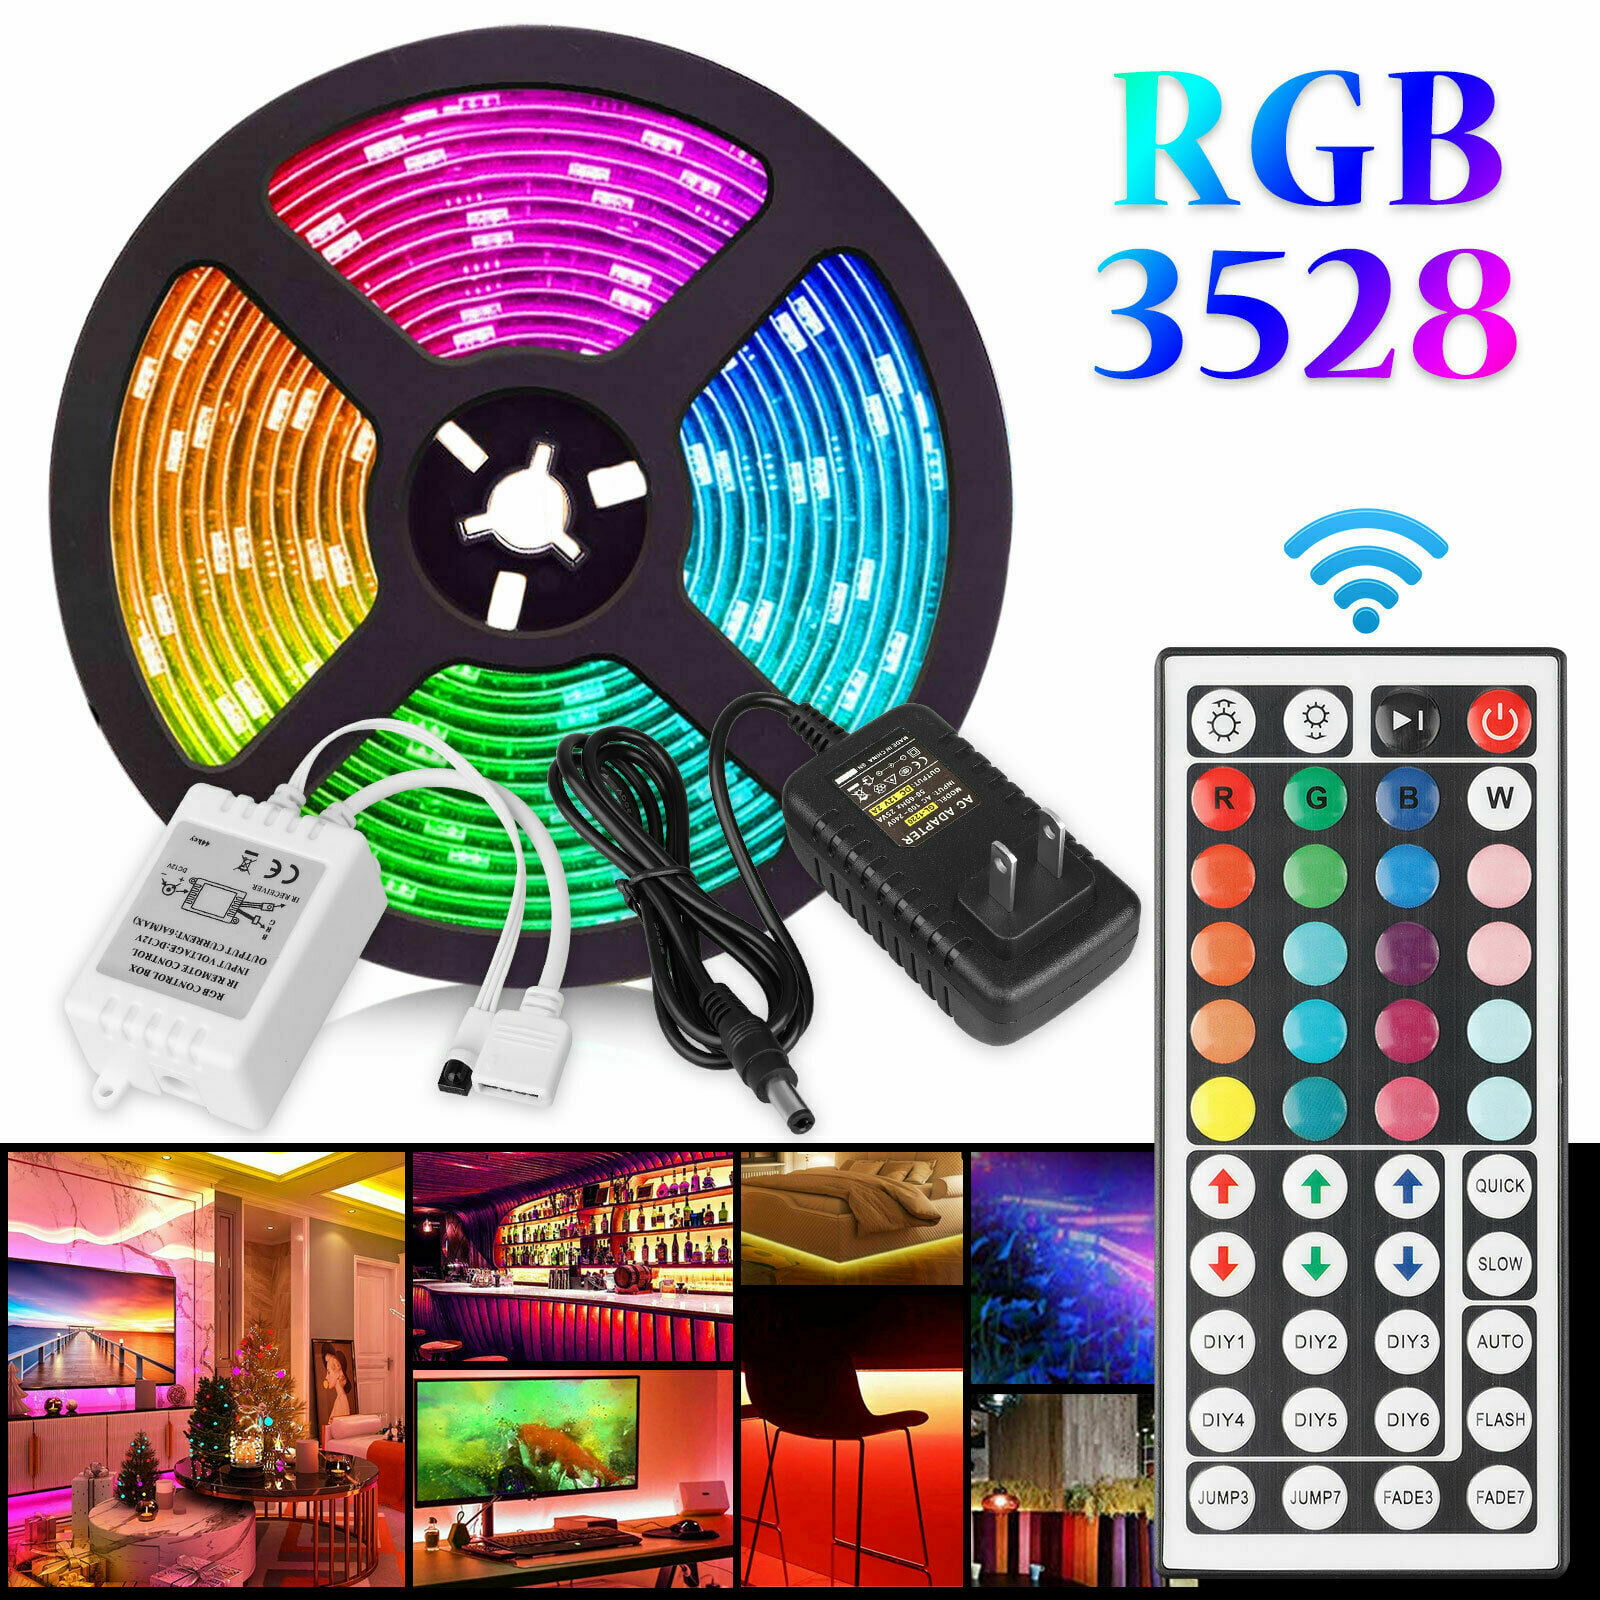 Super Bright 5V 3528 5050 SMD LED RGB Flexible Strip Home Xmas Party Decor Light 